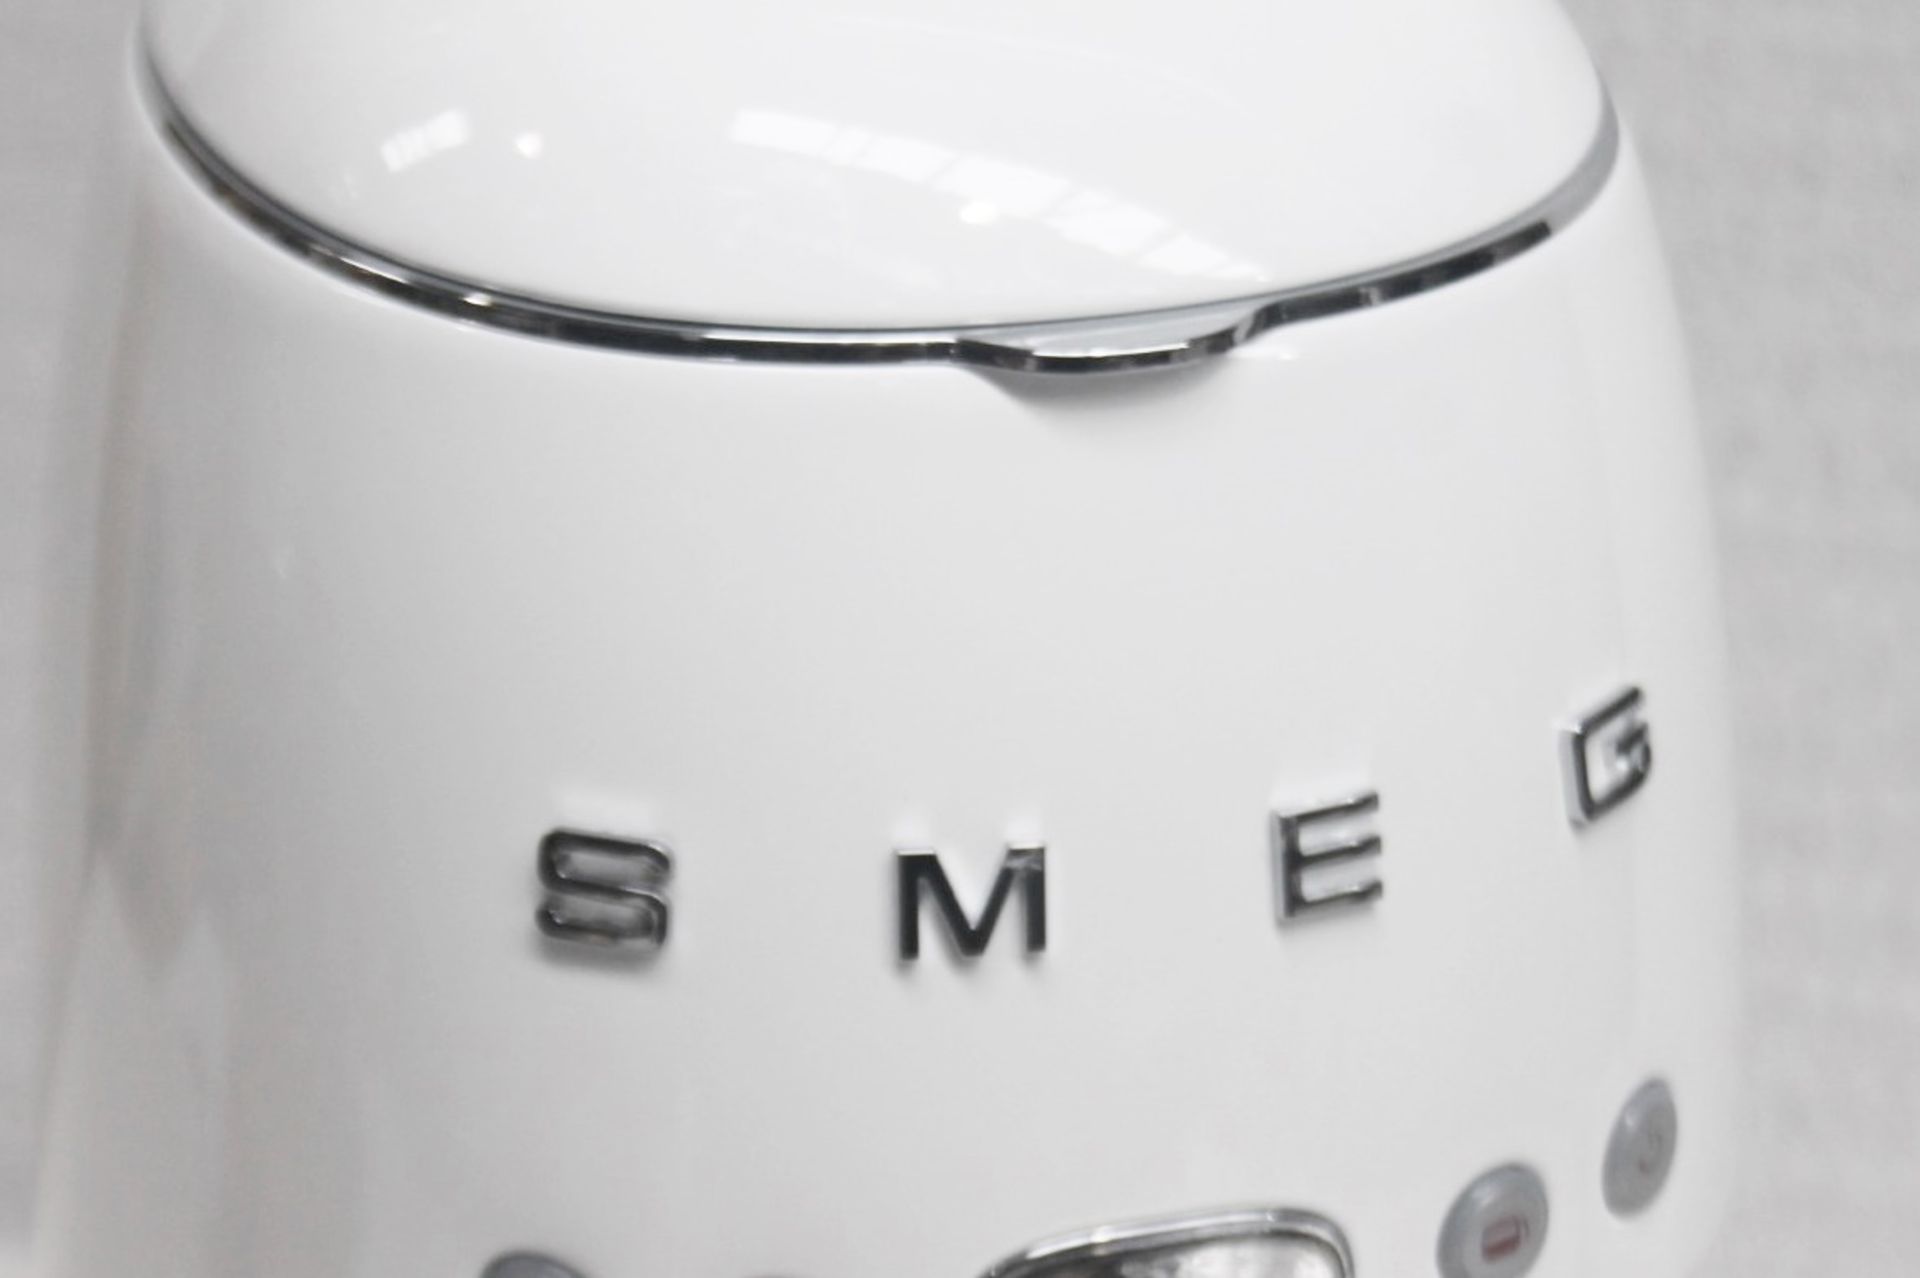 1 x SMEG Drip Retro-Style Filter Coffee Machine, With Digital Display - Original Price £199.00 - Image 10 of 17